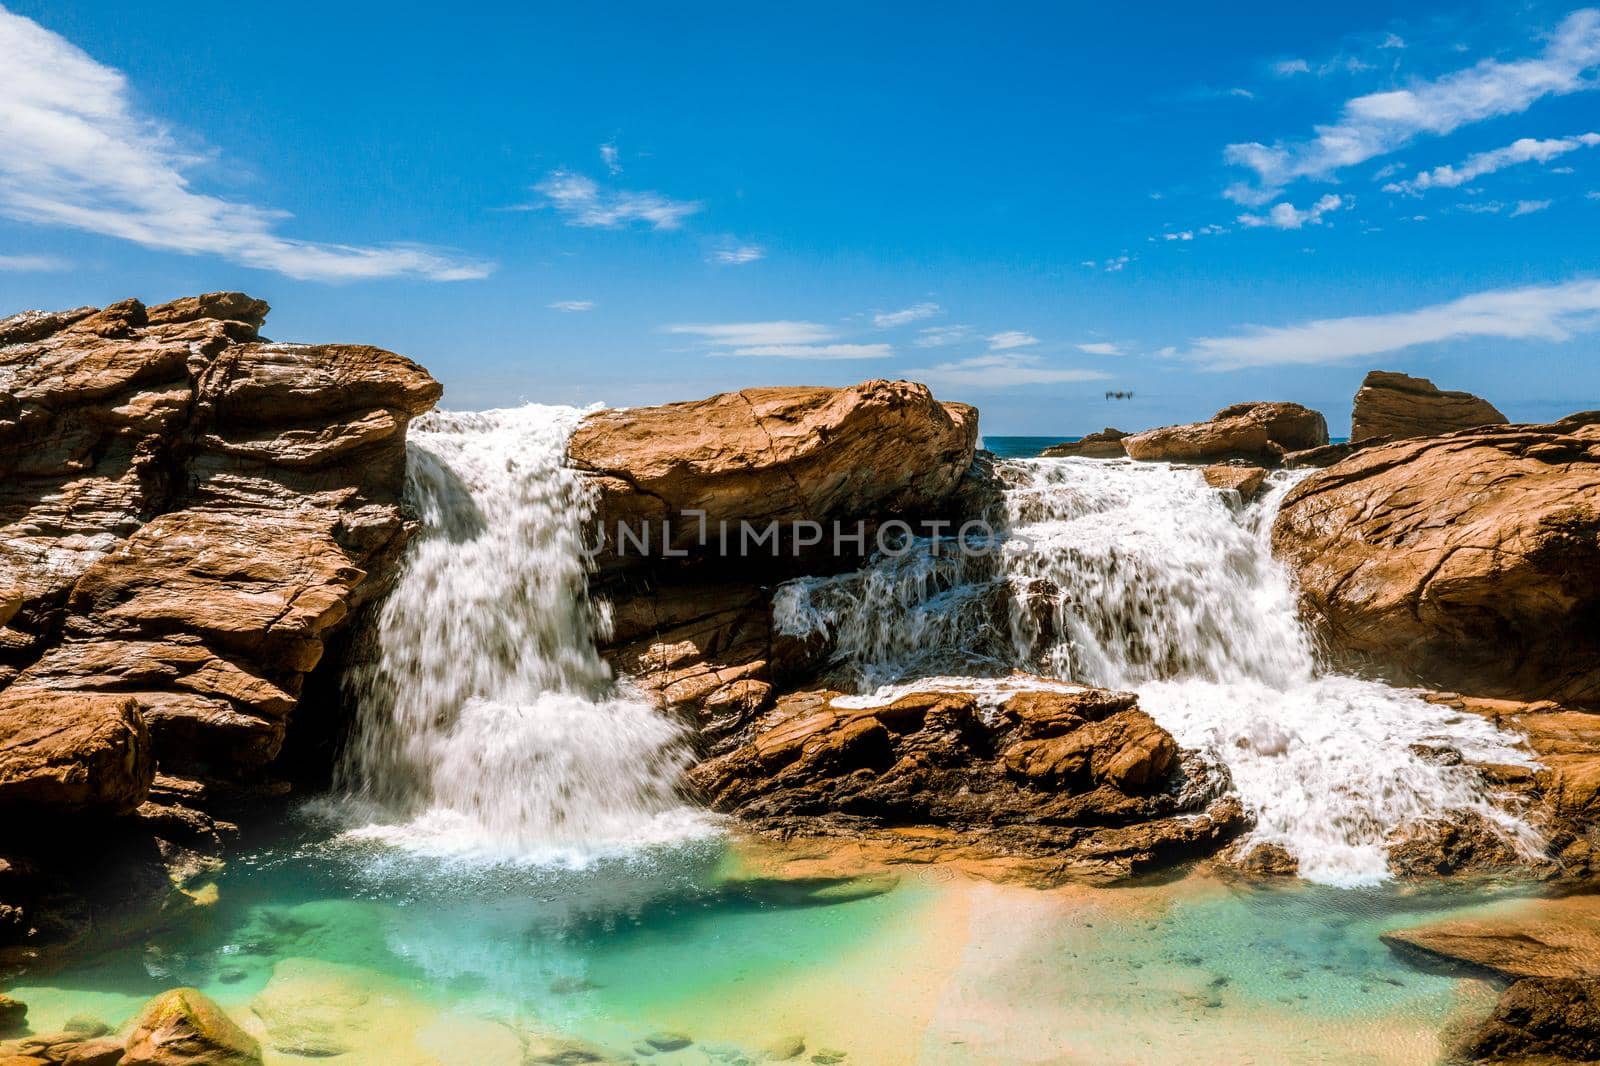 Waterfall into ocean rock pool by lovleah